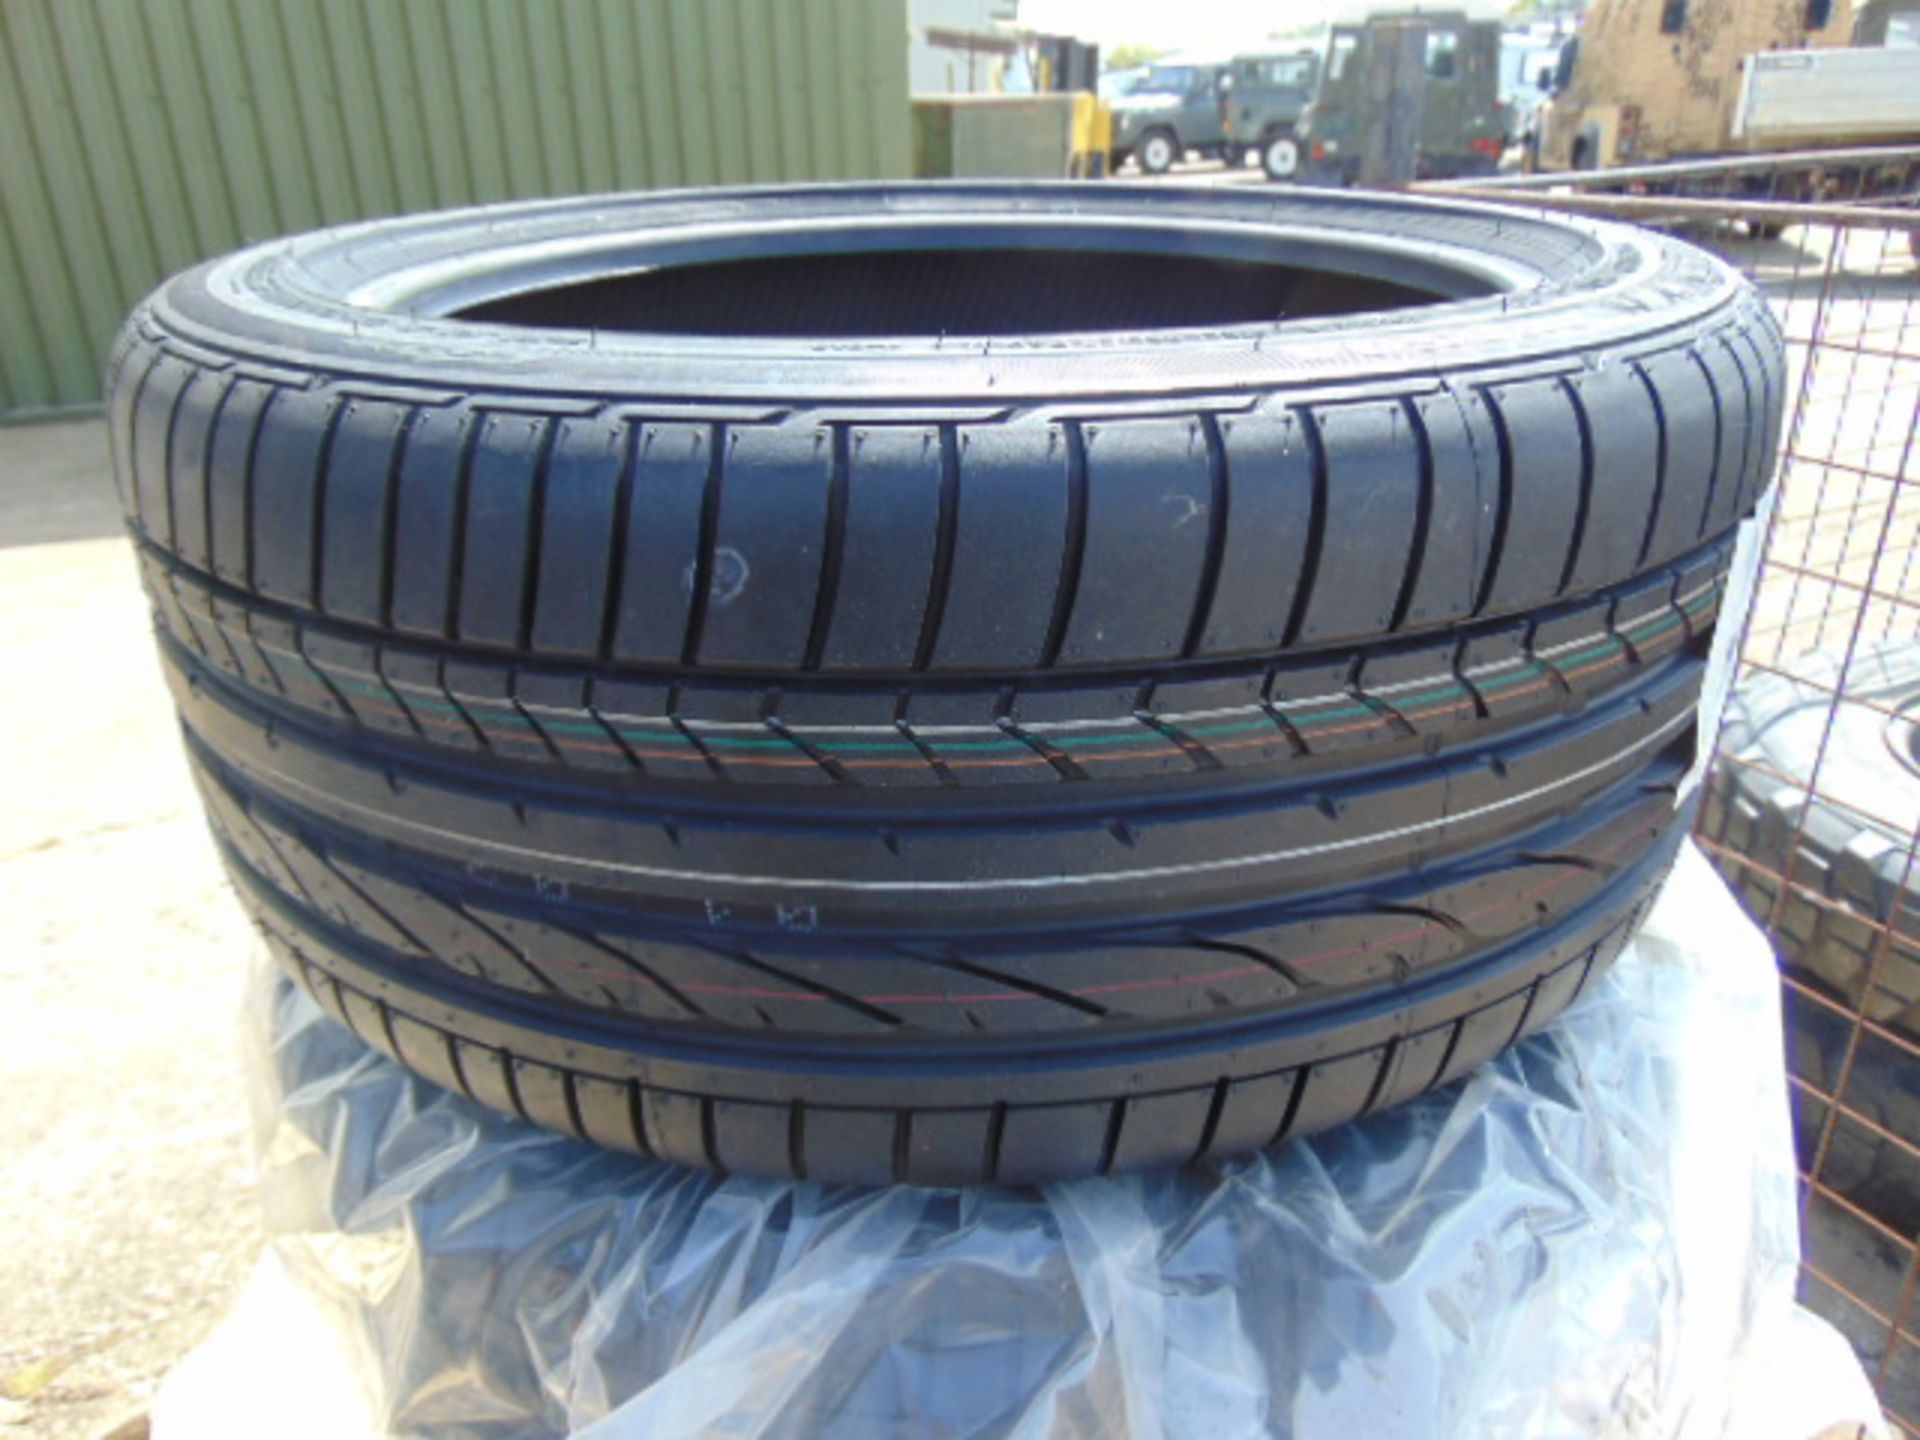 4 x Bridgestone Potenza 245/40 R18 97Y XL Tyres - Image 4 of 8